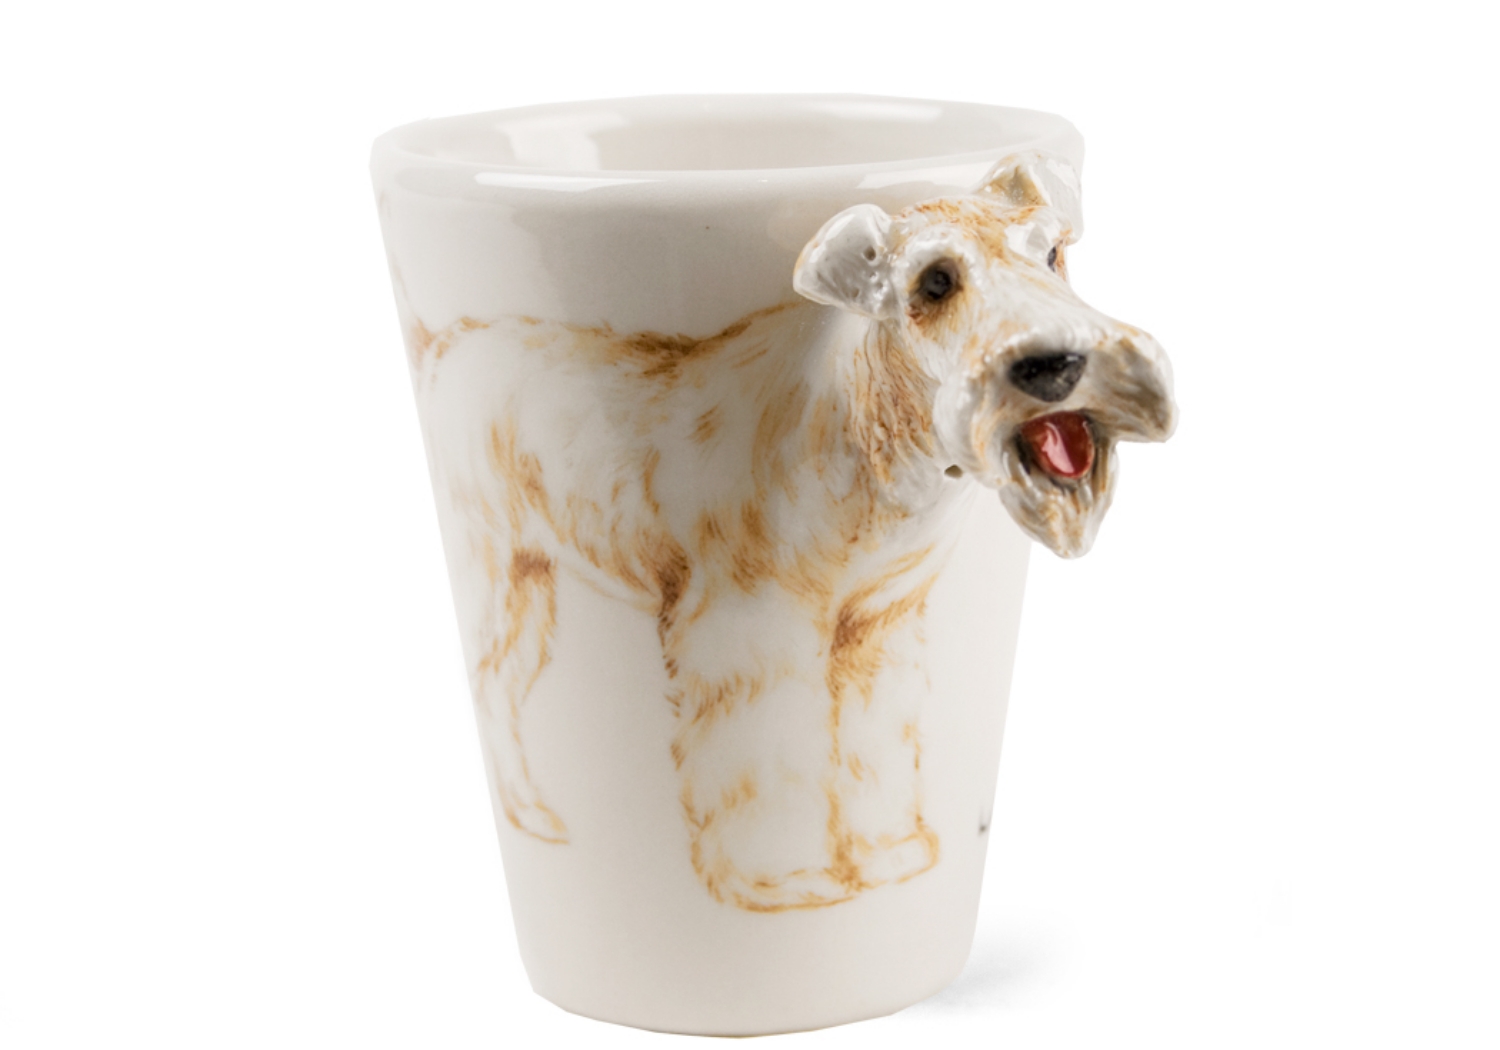 Lakeland Terrier Coffee Mug